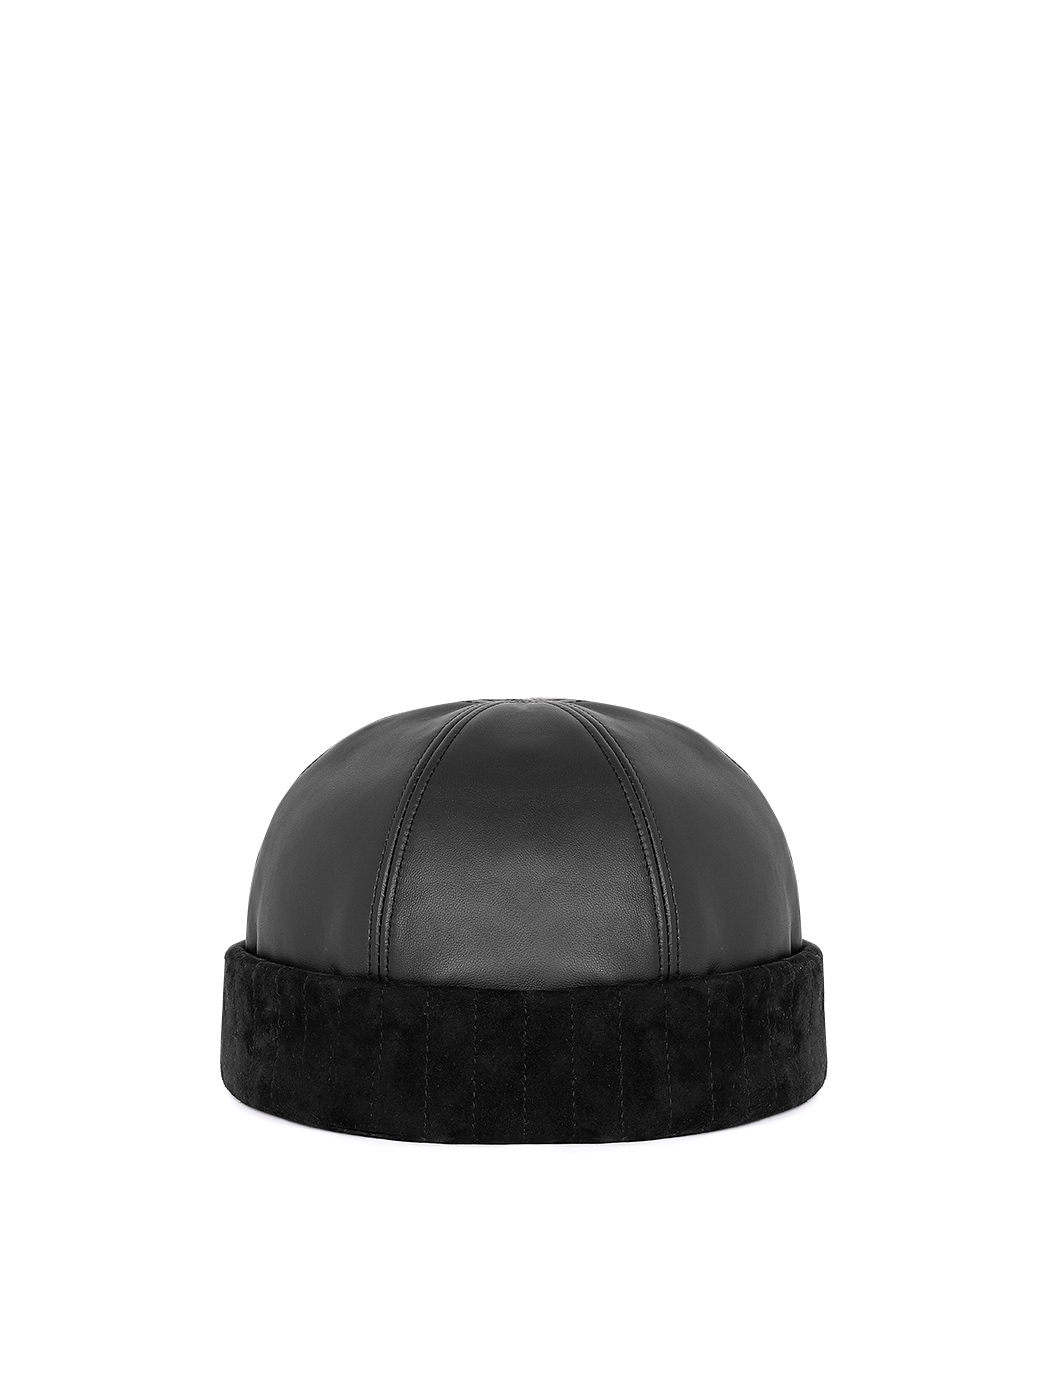 Black Docker hat